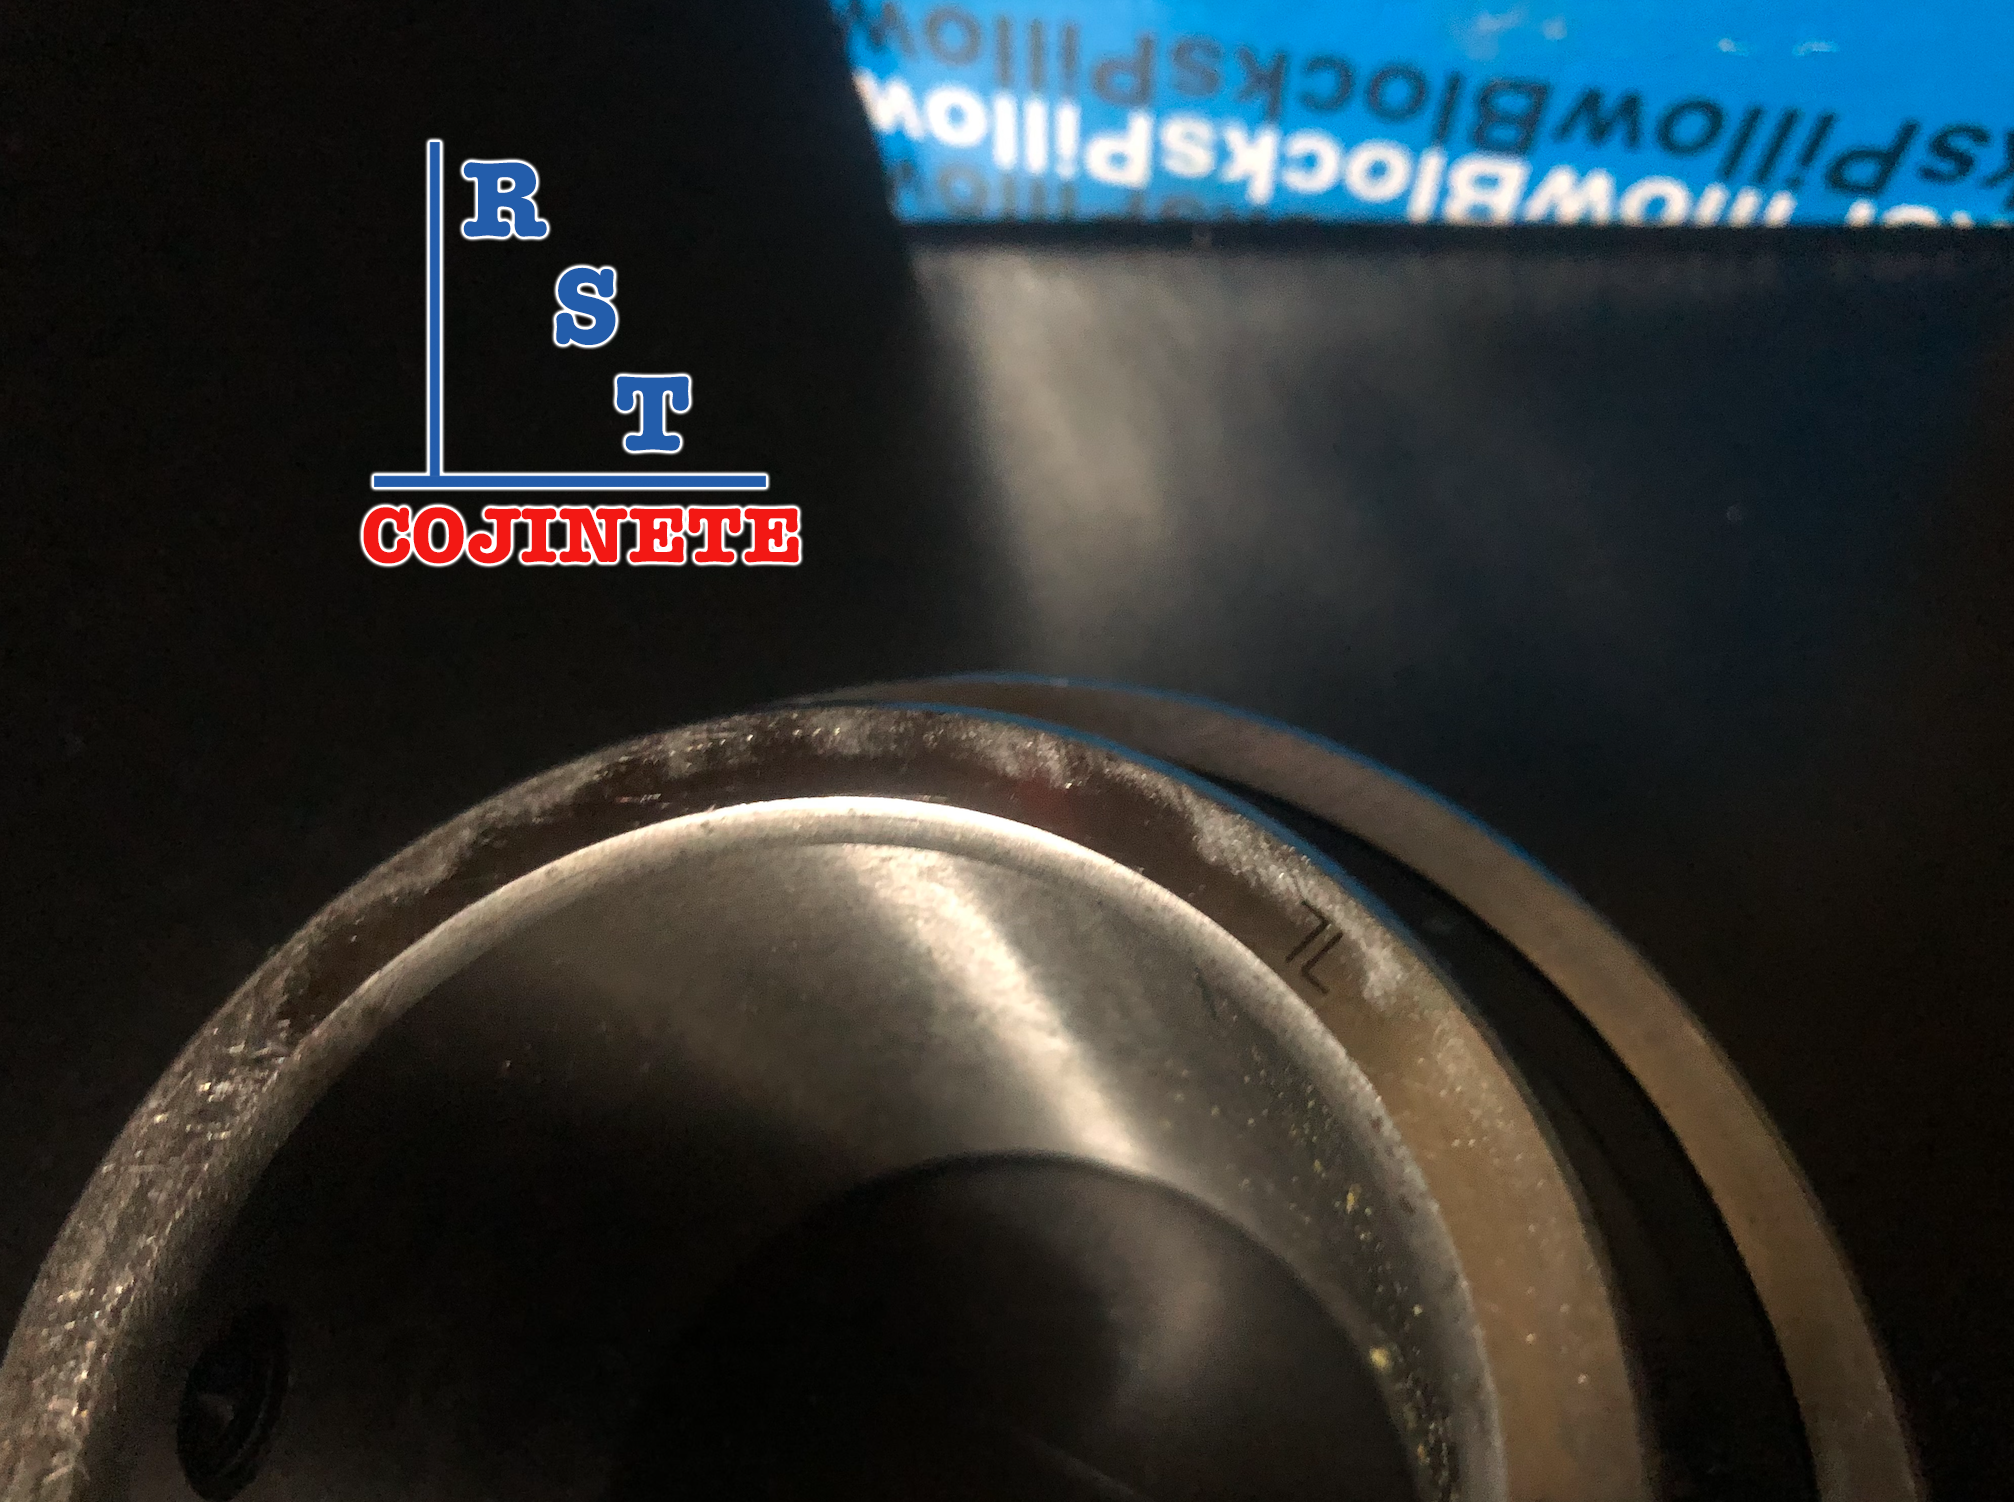 Cojinete insertable UC210-31 | Rodamiento para eje de 1-15/16" rígido de bolas con sello de hule para chumacera